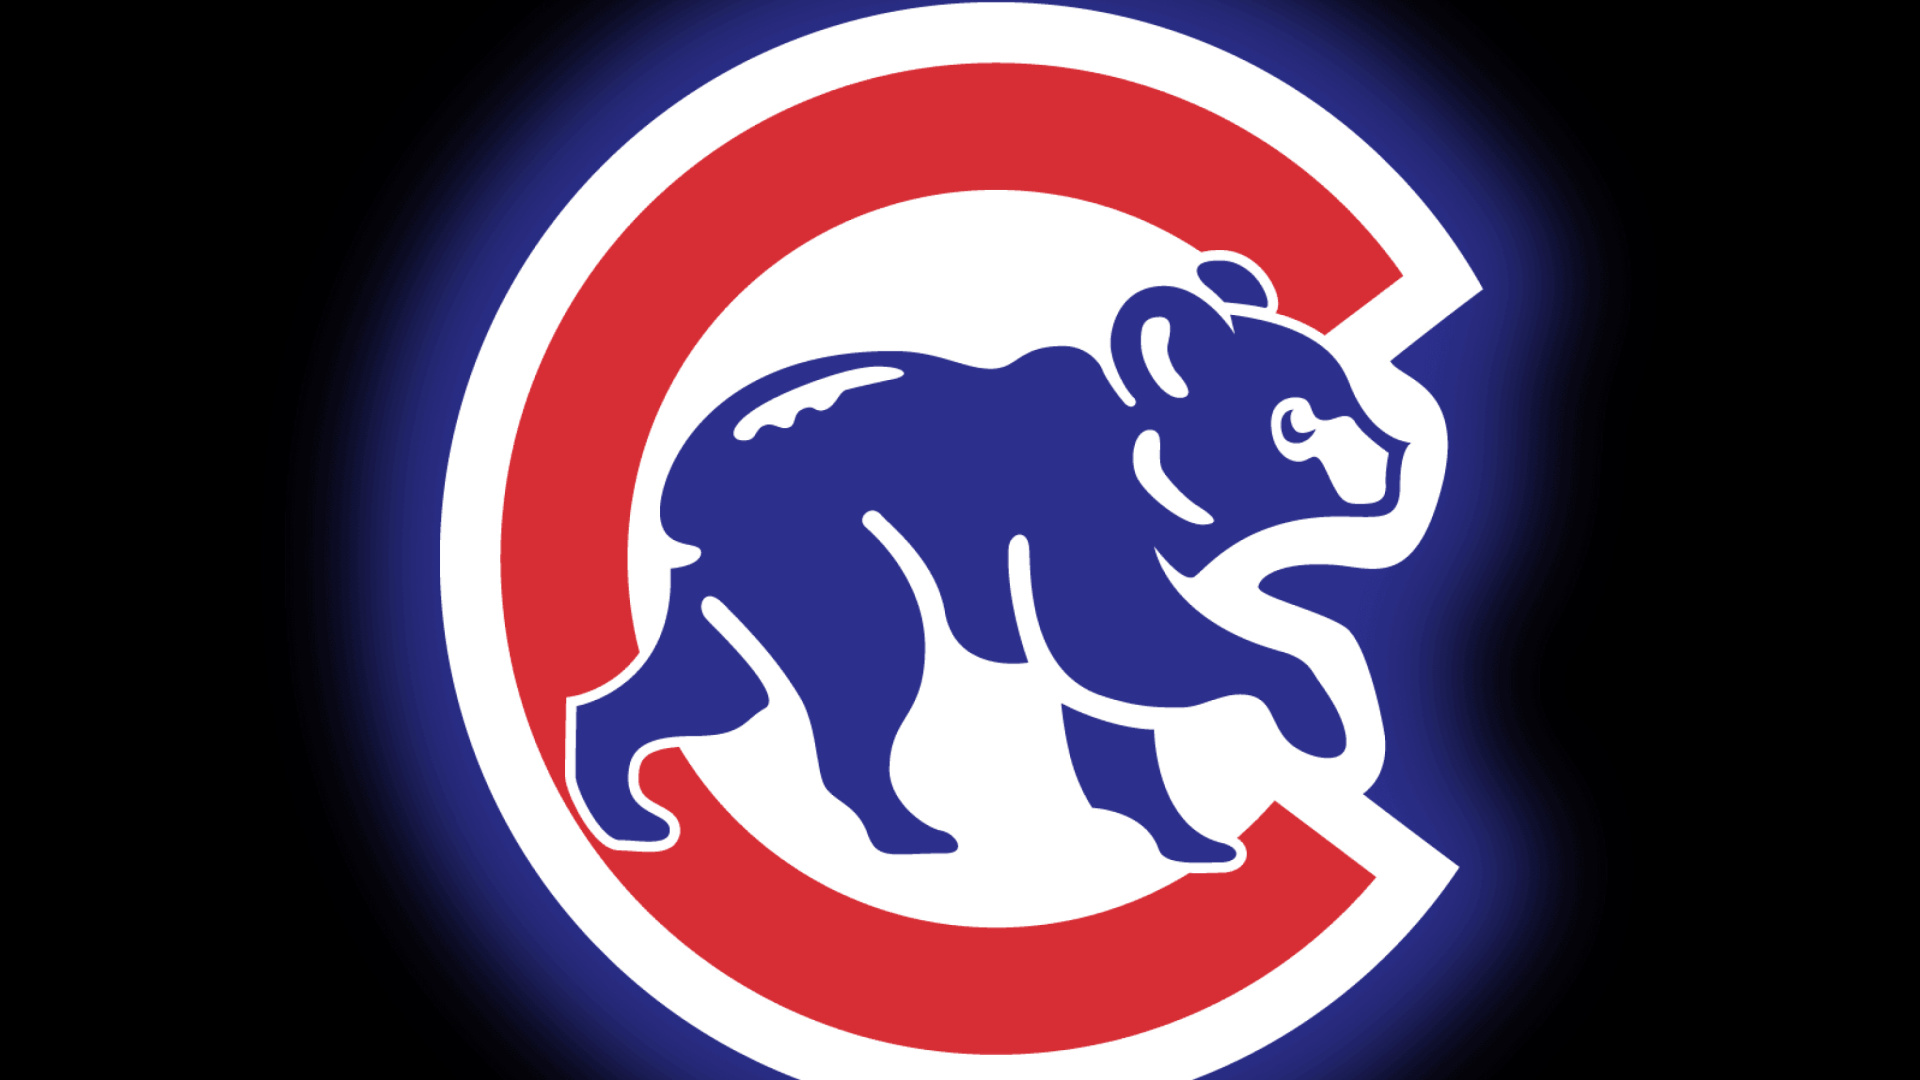 Обои Chicago Cubs Baseball Team 1920x1080